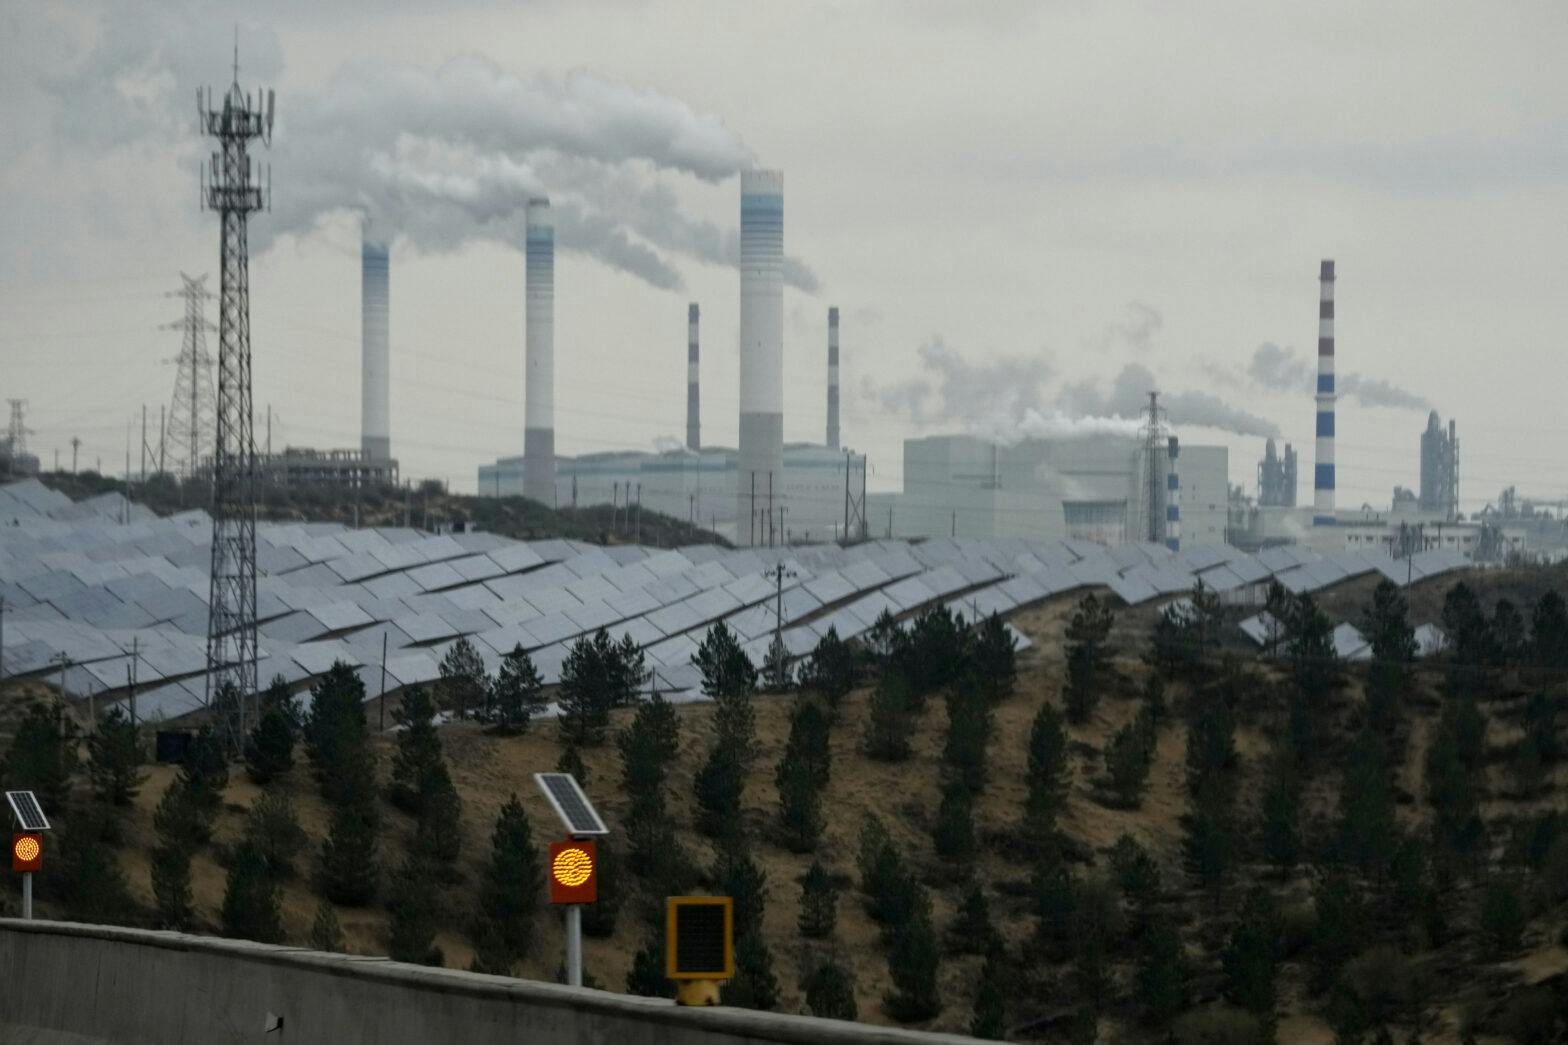 Et bilde av en solcellepark foran et industriområde med rykende piper.